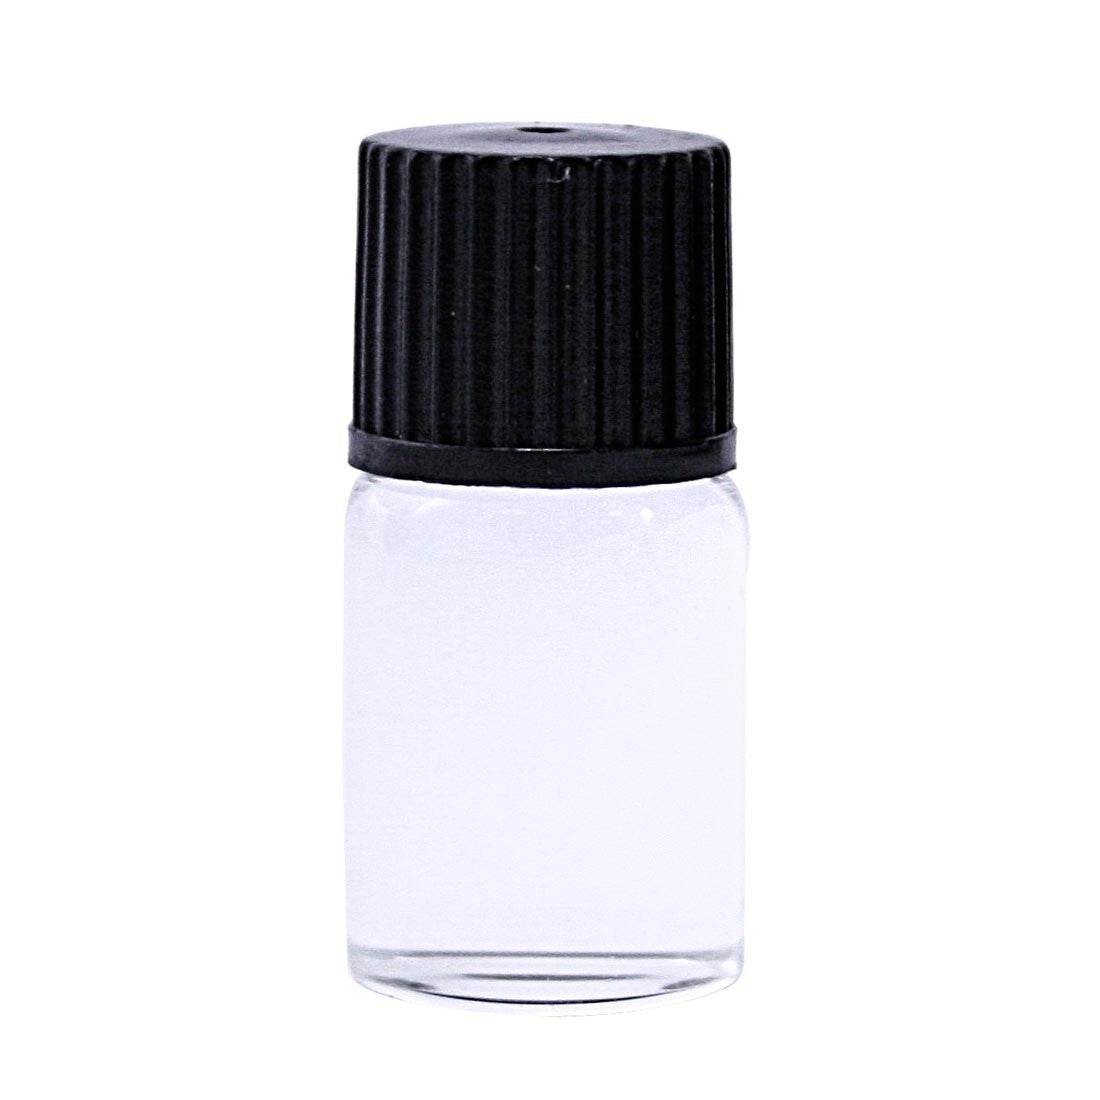 Bergeon 5680 Refills for Thinner Varnish and Luminous Powder